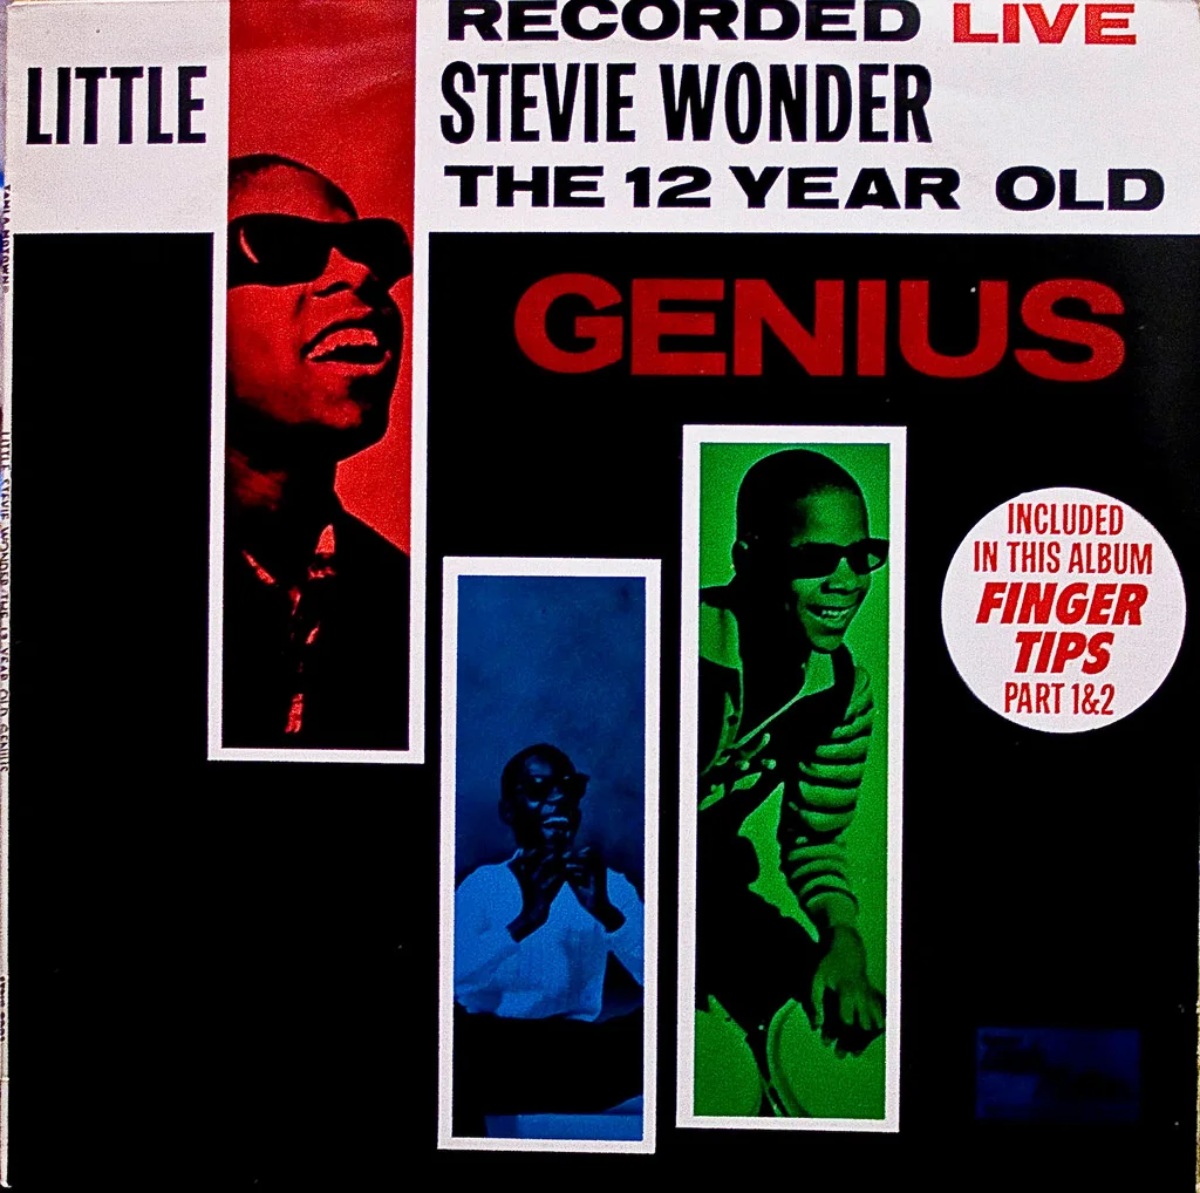 Cover von Stevie Wonders "Recorded Live": Das 12-jährige Genie